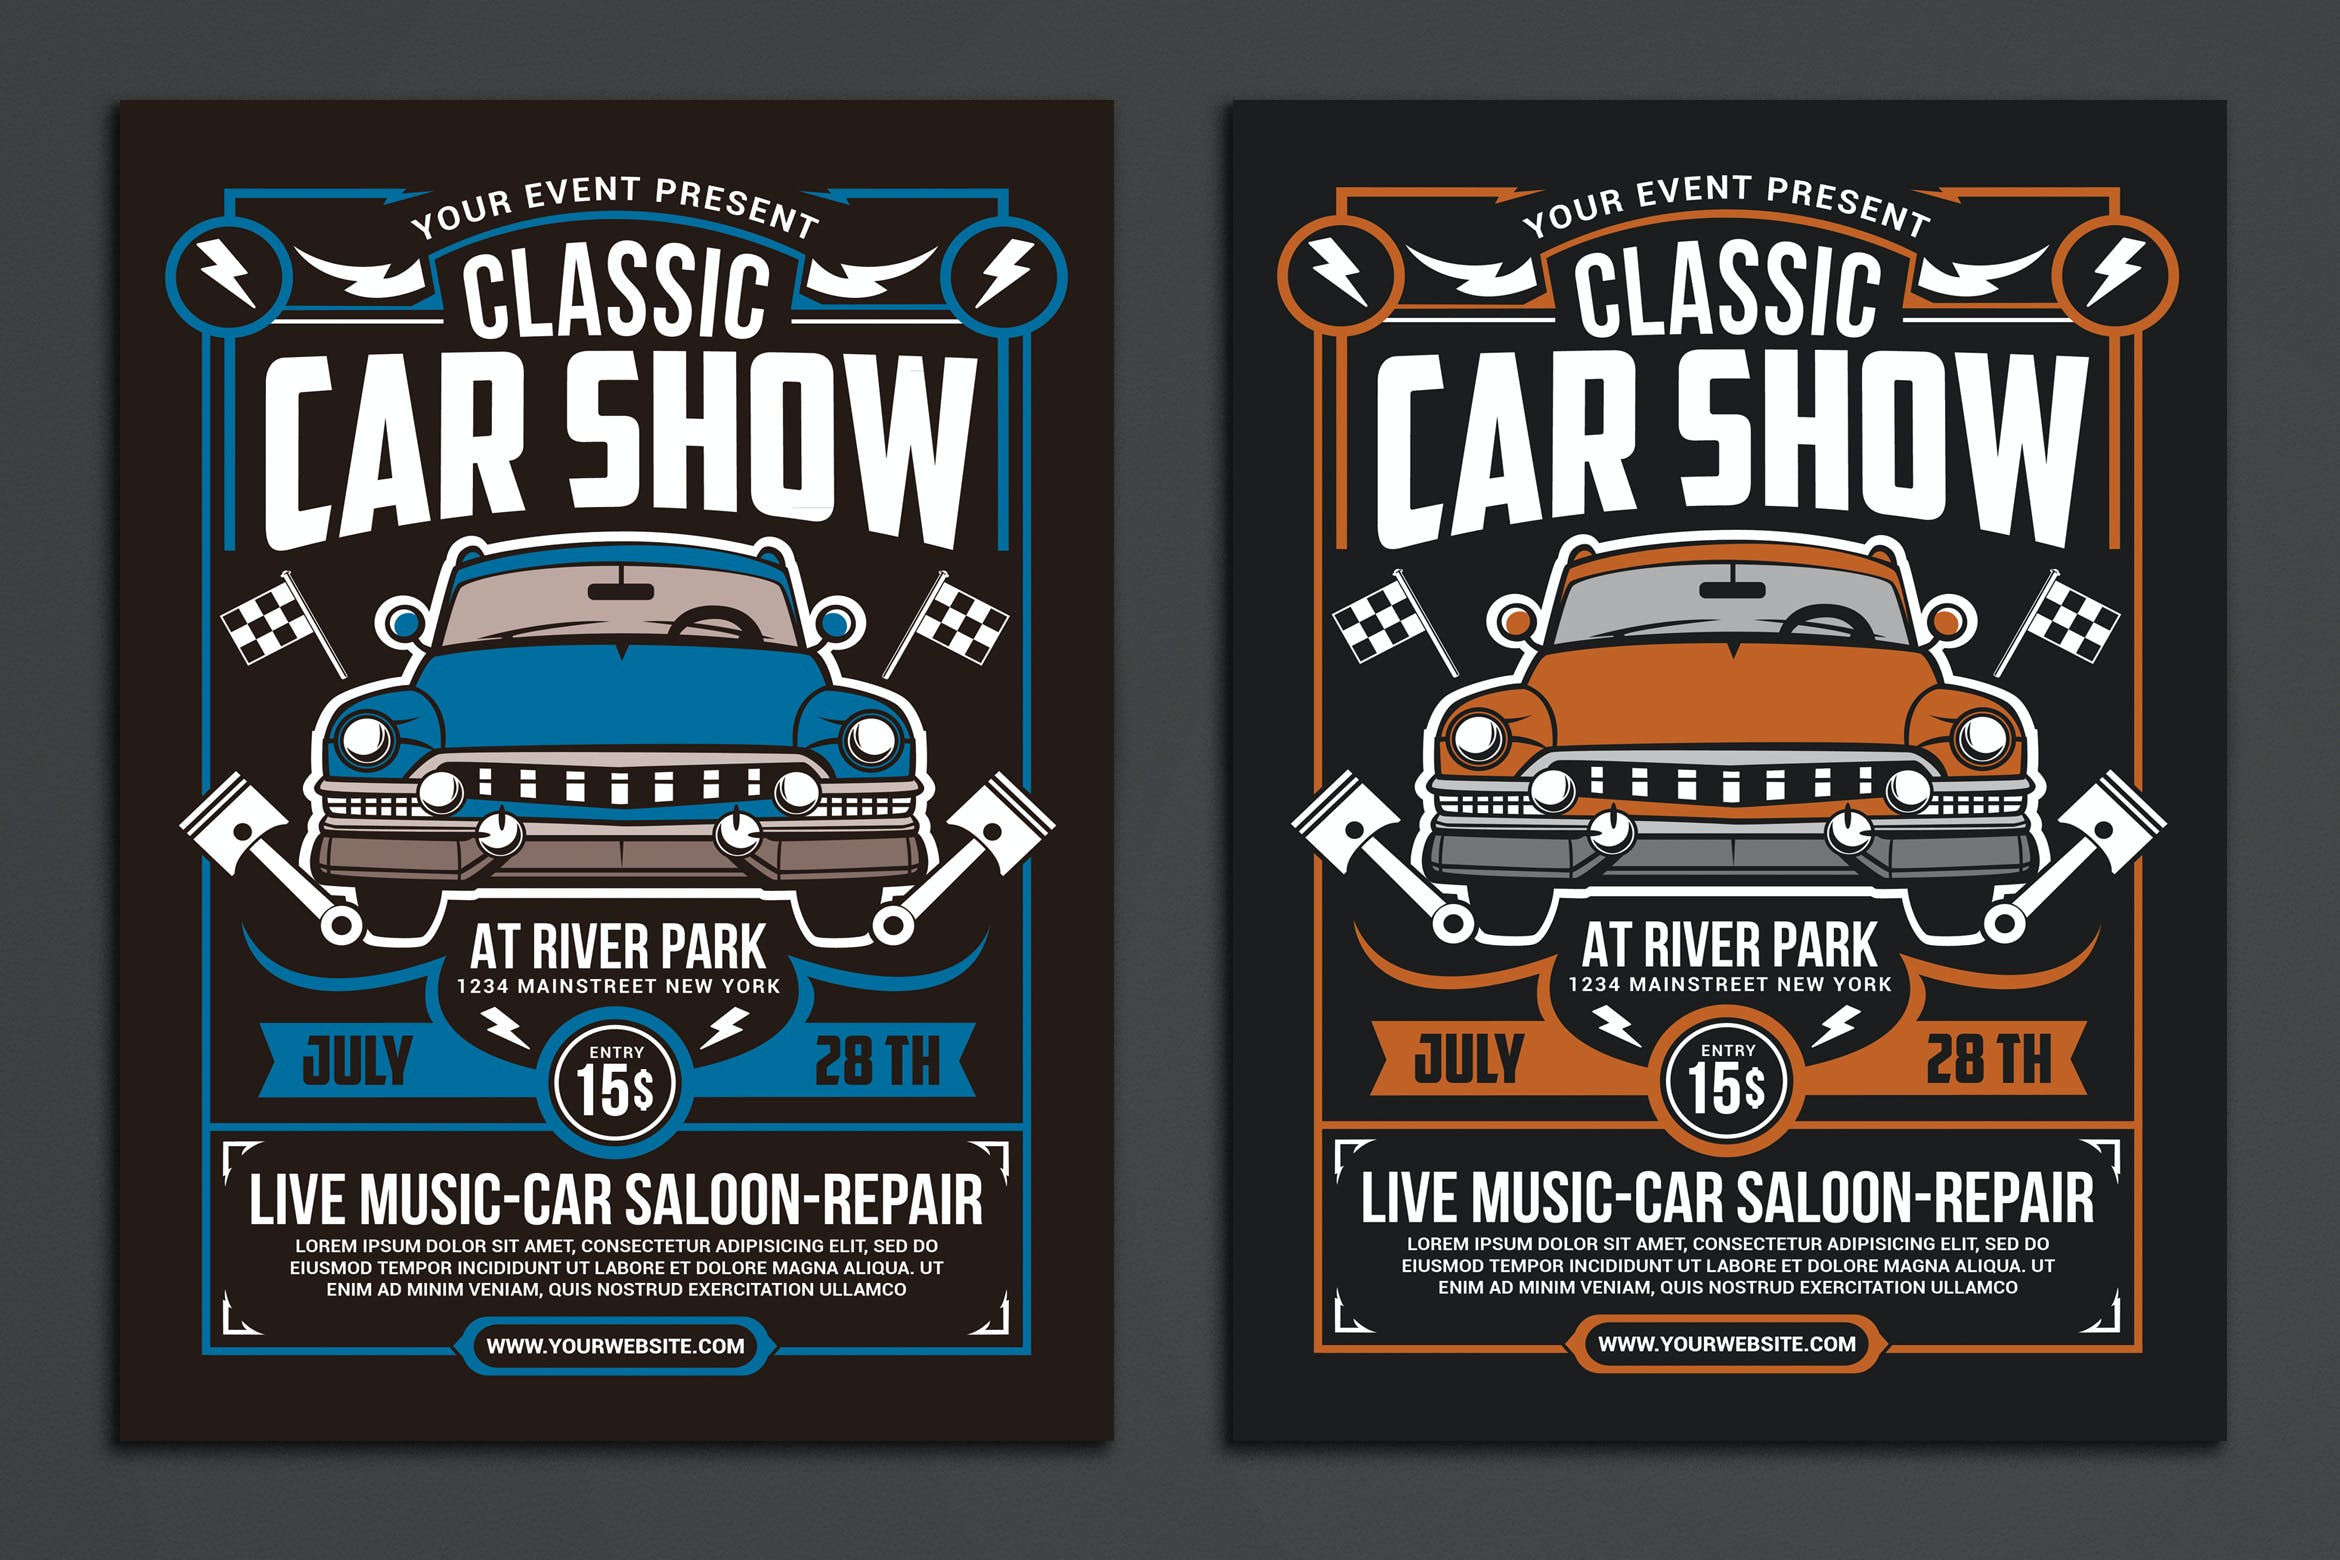 古董老爷车活动展览宣传传单模板 Classic Car Show Event设计素材模板